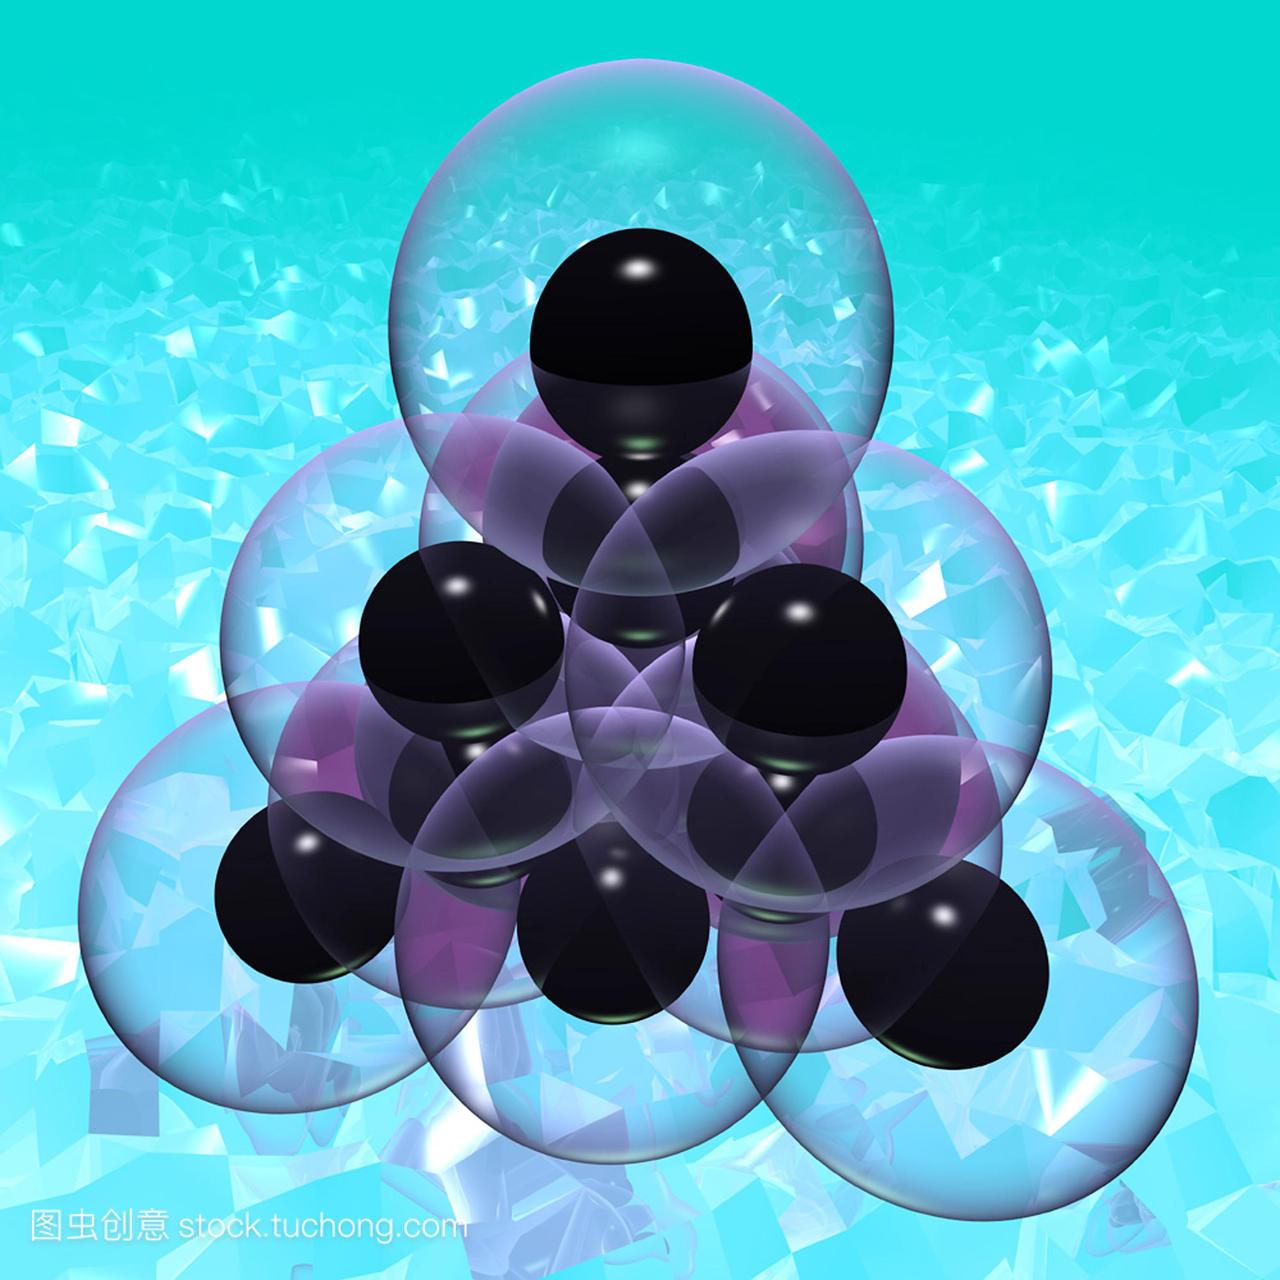 钻石分子电脑绘图。钻石是一种同素异形体或结